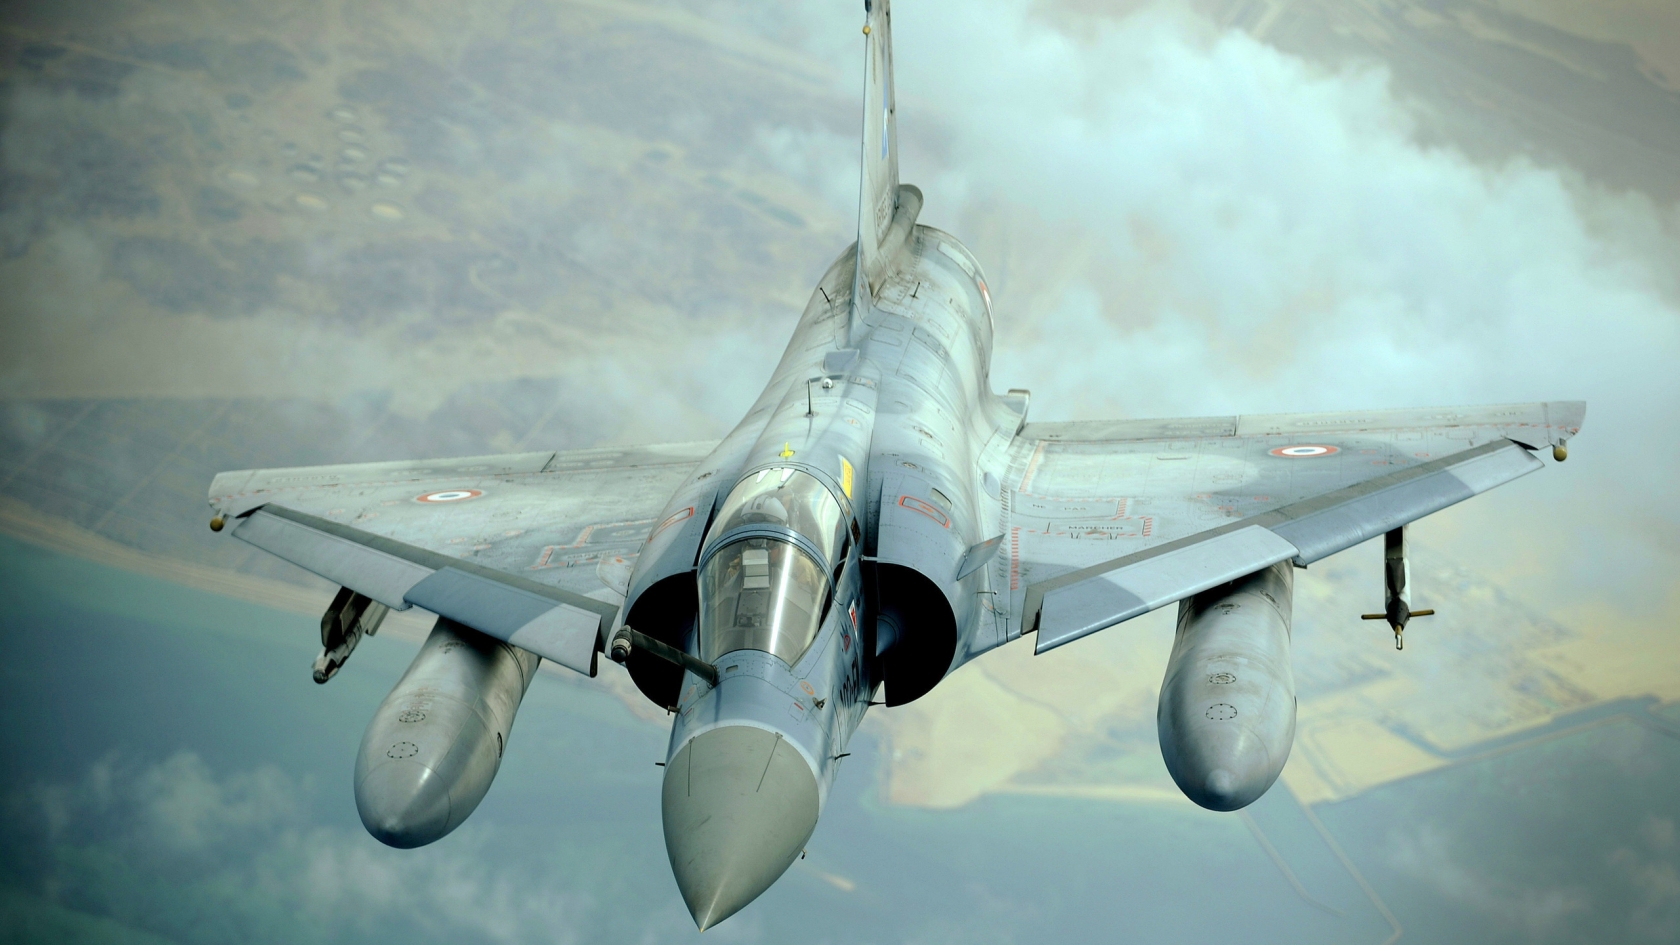 Dassault Mirage 2000 for 1680 x 945 HDTV resolution